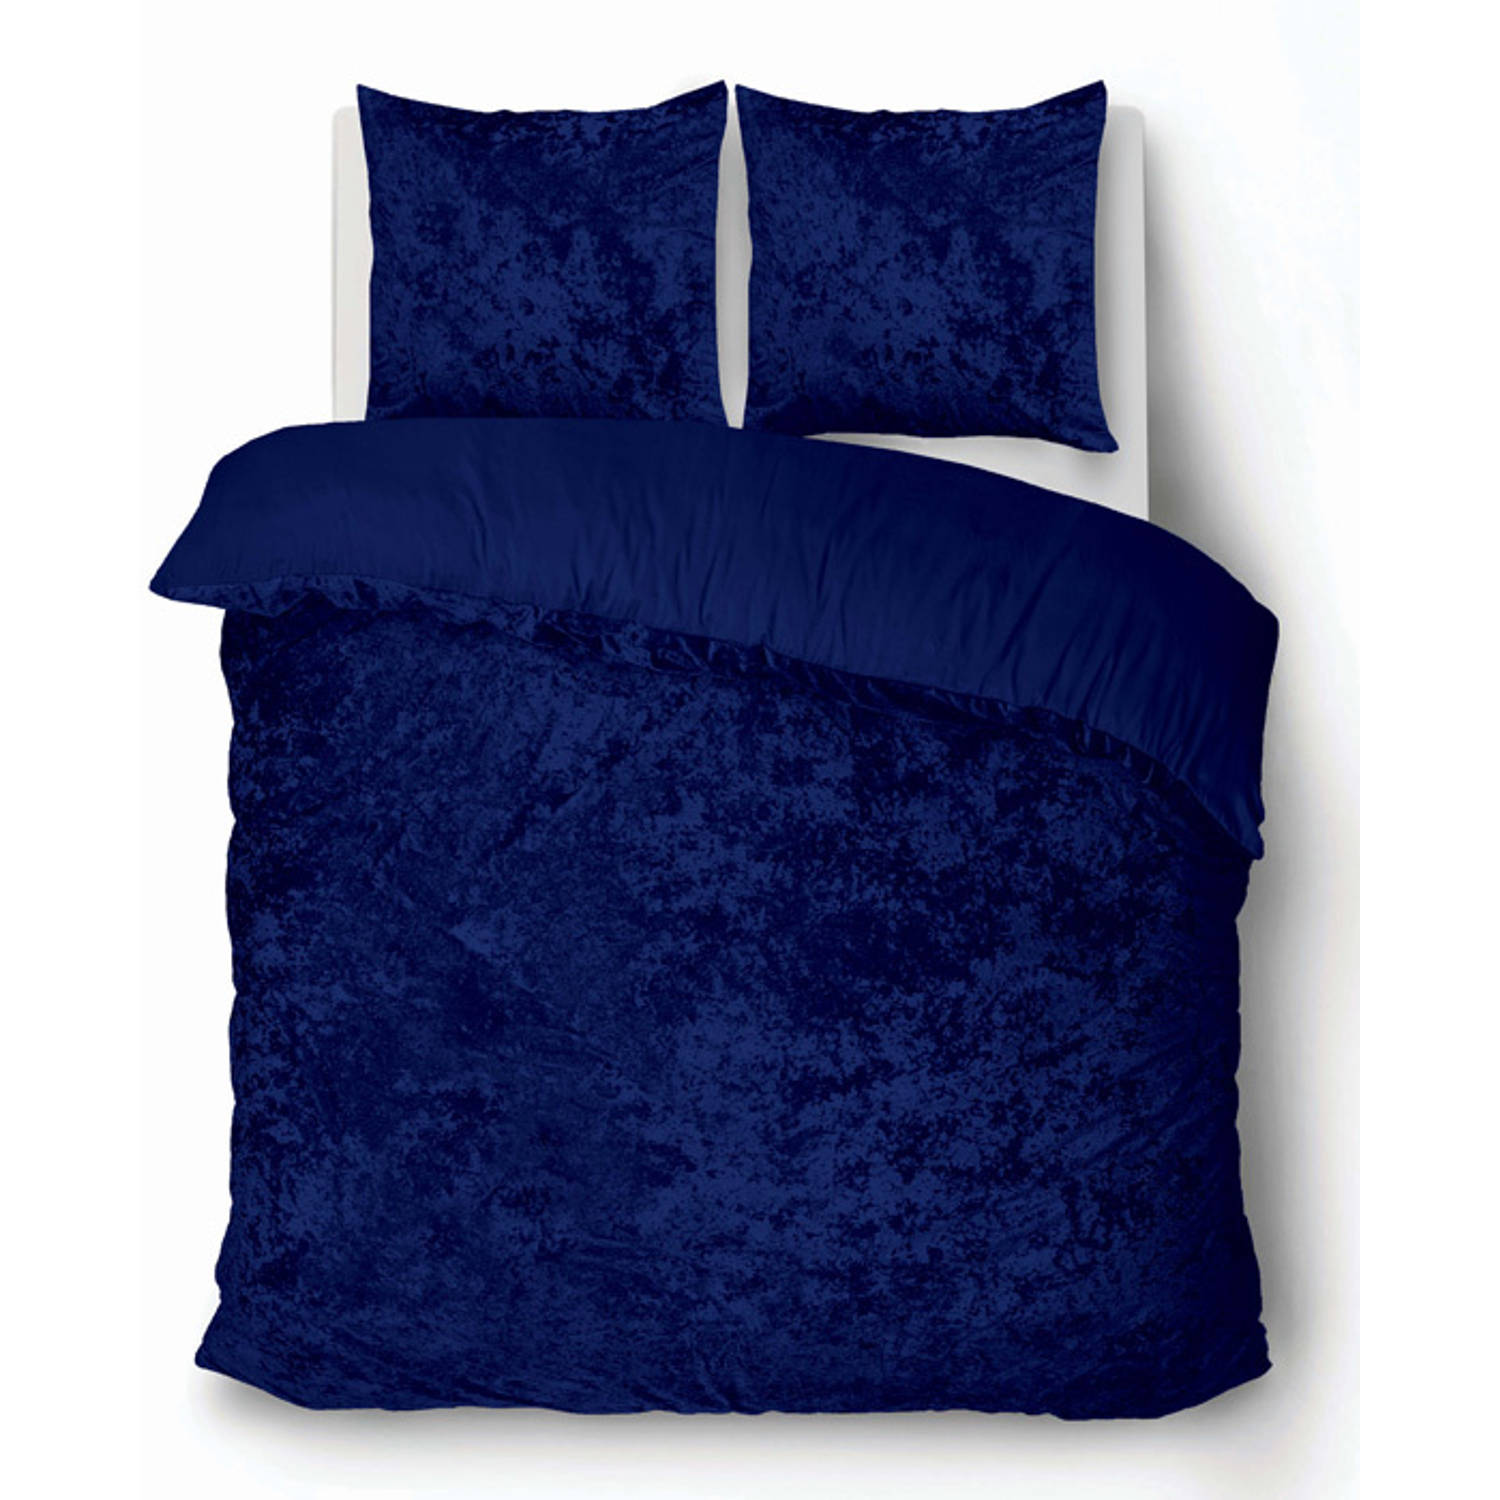 iSleep Dekbedovertrek Crushed Velvet Blauw 2-Persoons 200x200-220 cm